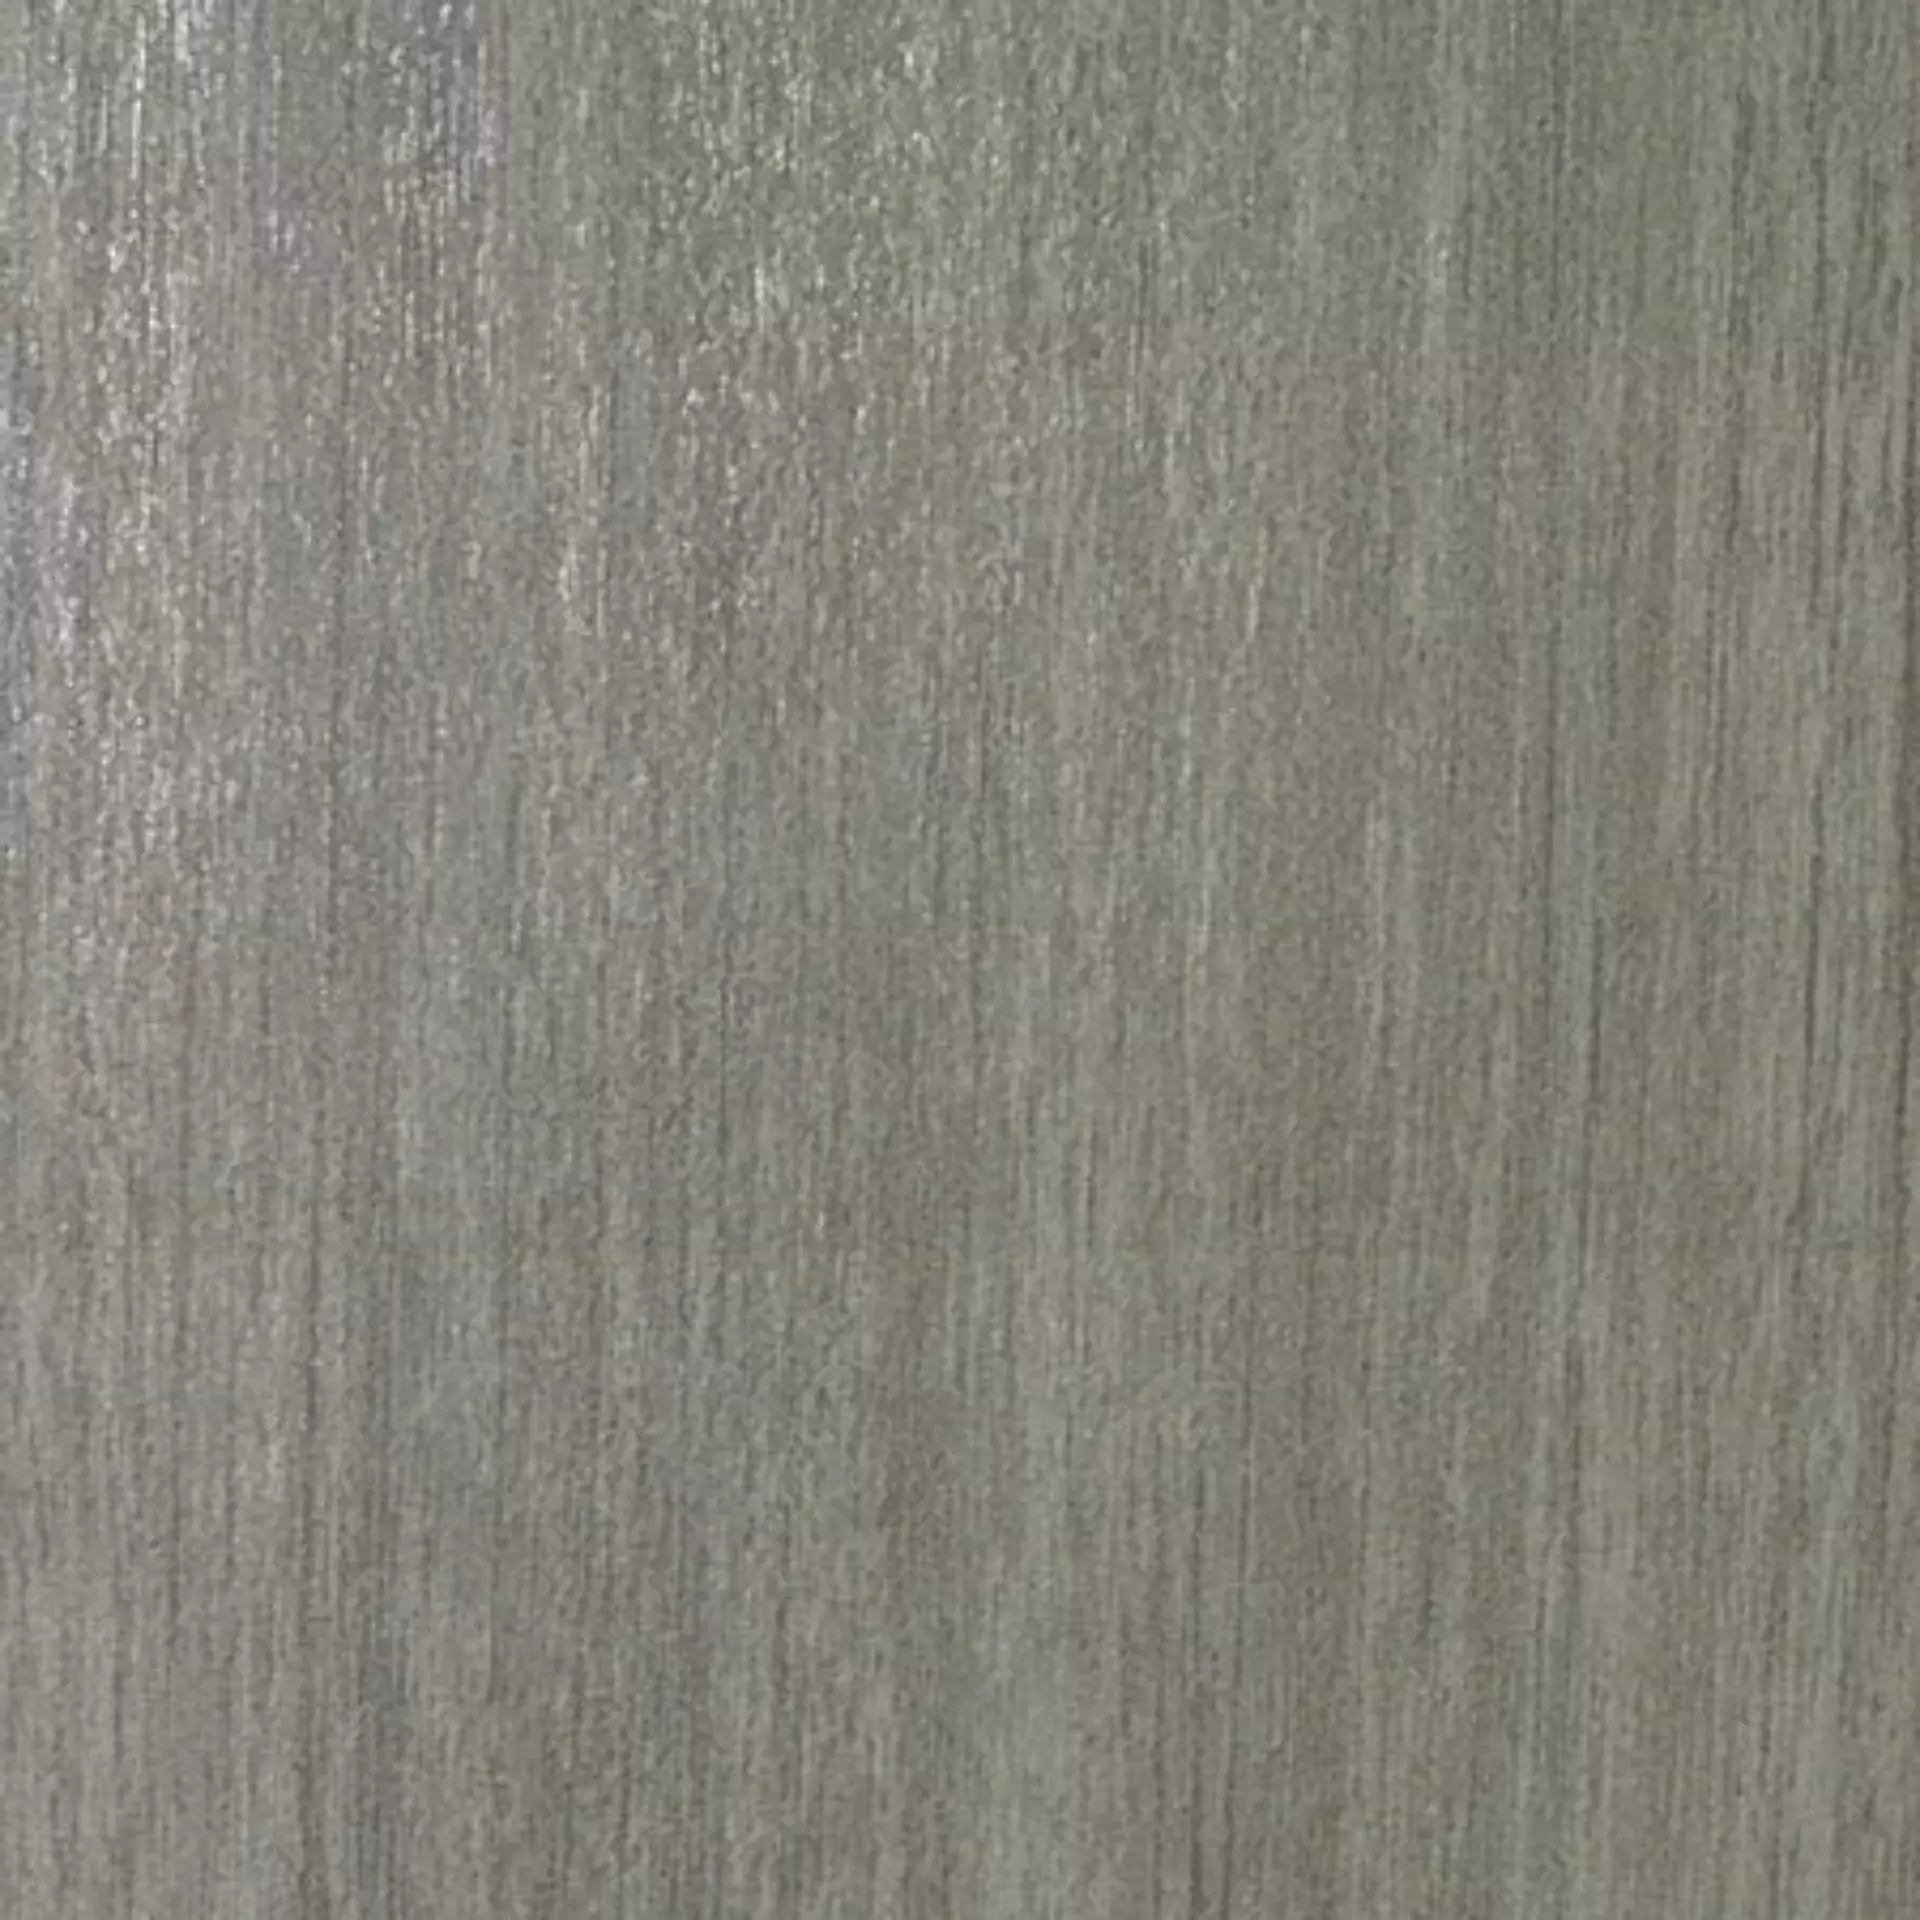 Casalgrande Metalwood Argento Naturale – Matt 7600195 60x60cm rectified 9mm